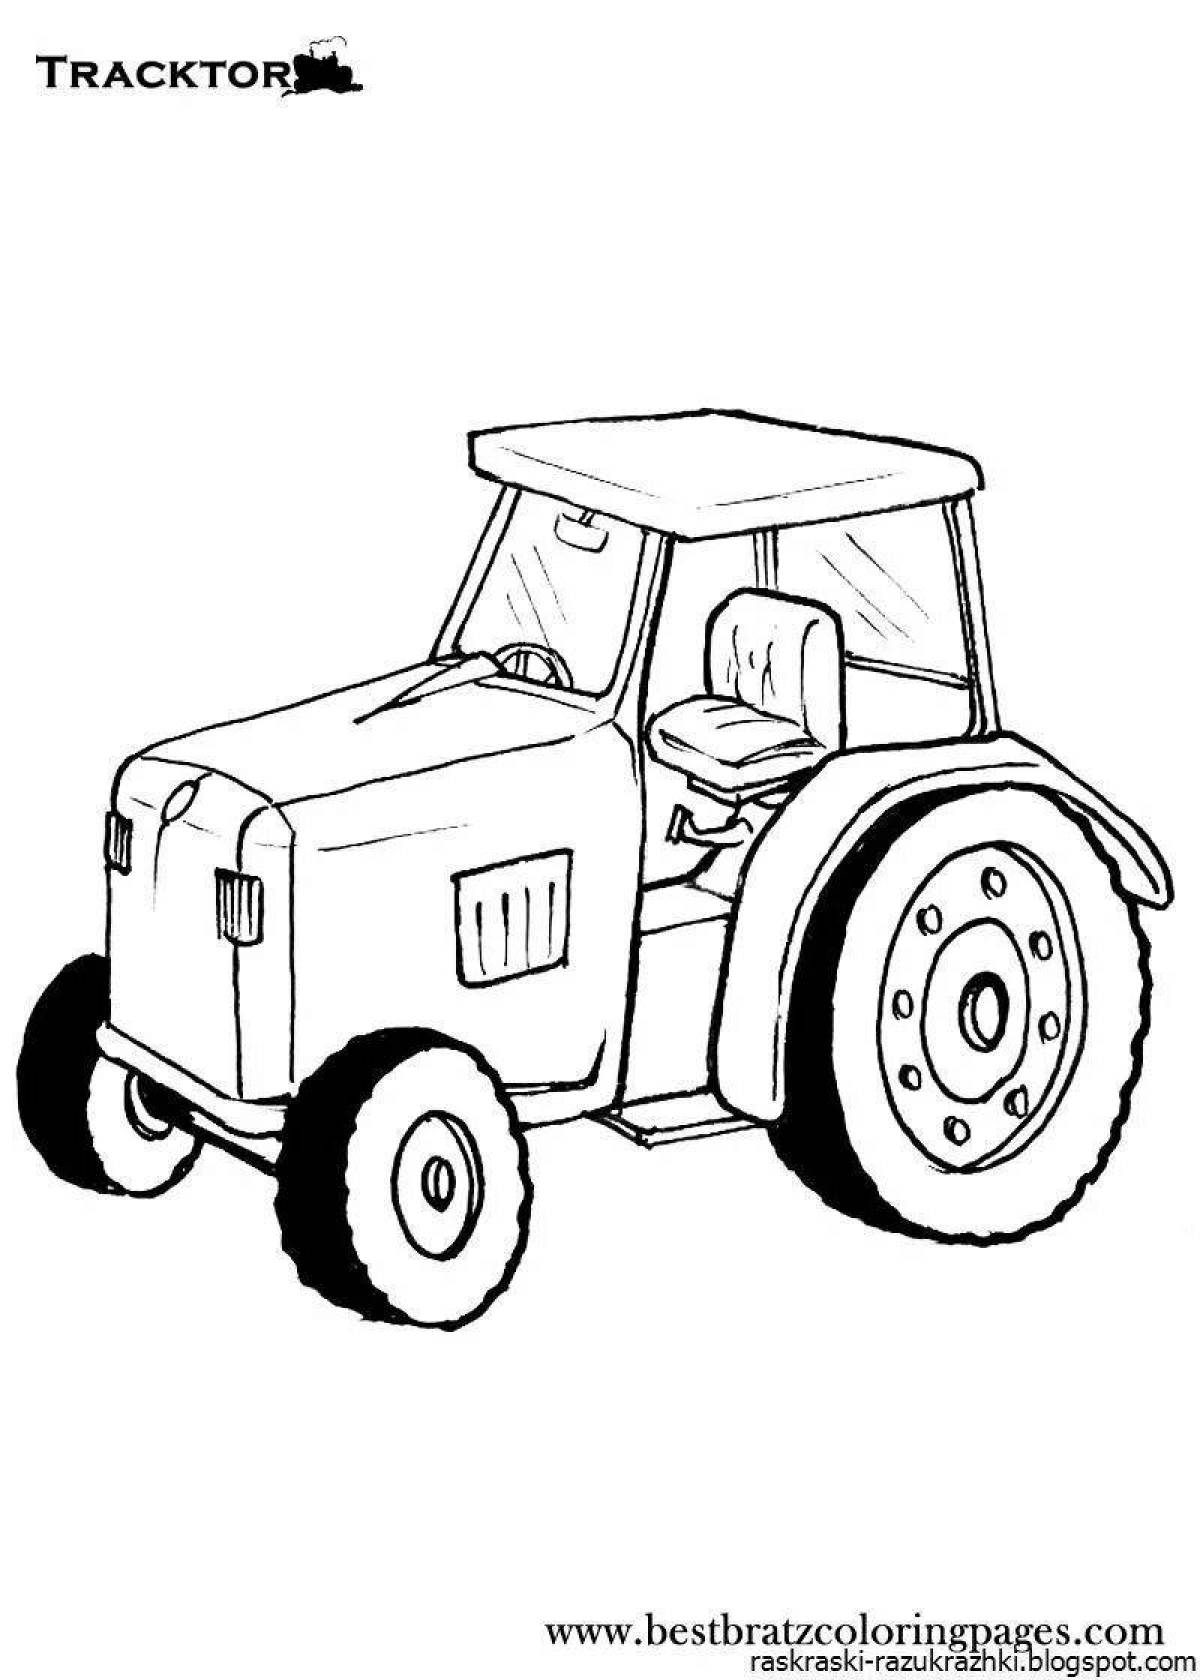 Игривый рисунок трактора